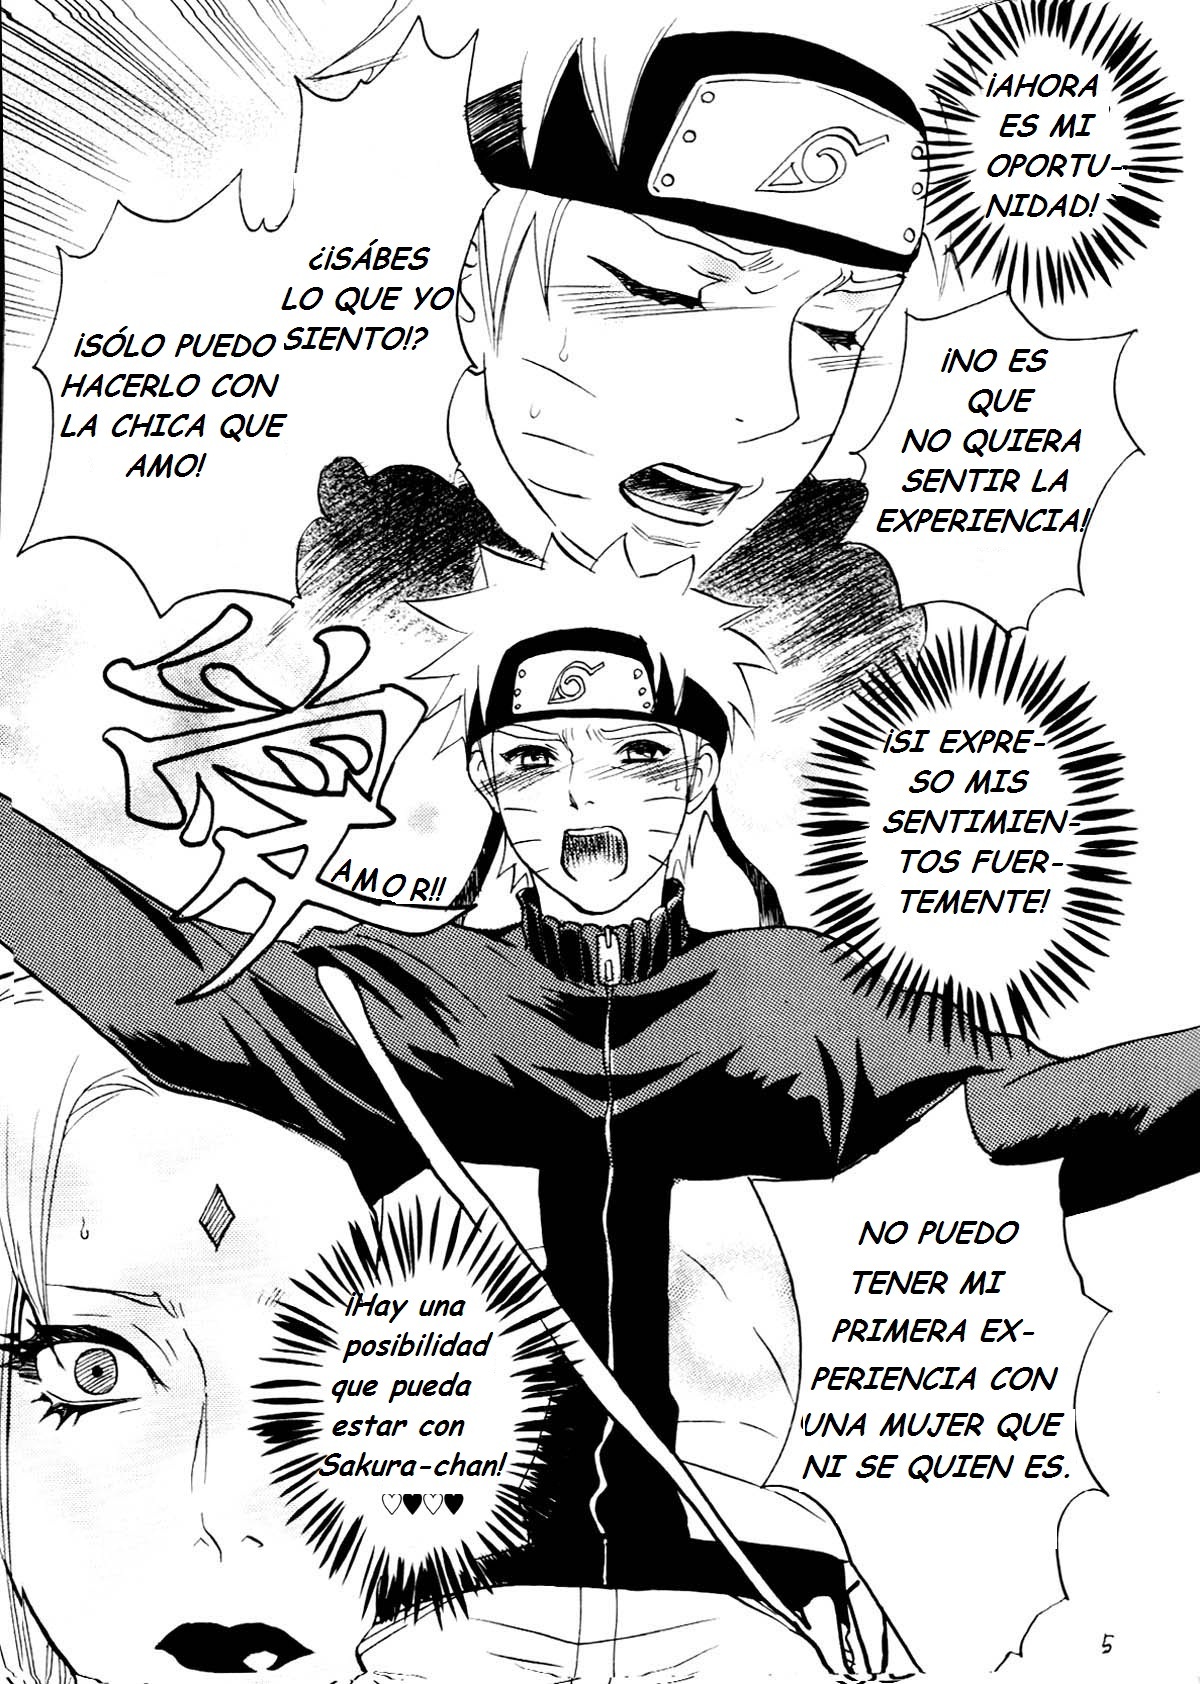 Fude Oroshi no Gi (Naruto Manga Yaoi) - 4 - Comics Porno - Hentai Manga - Cartoon XXX